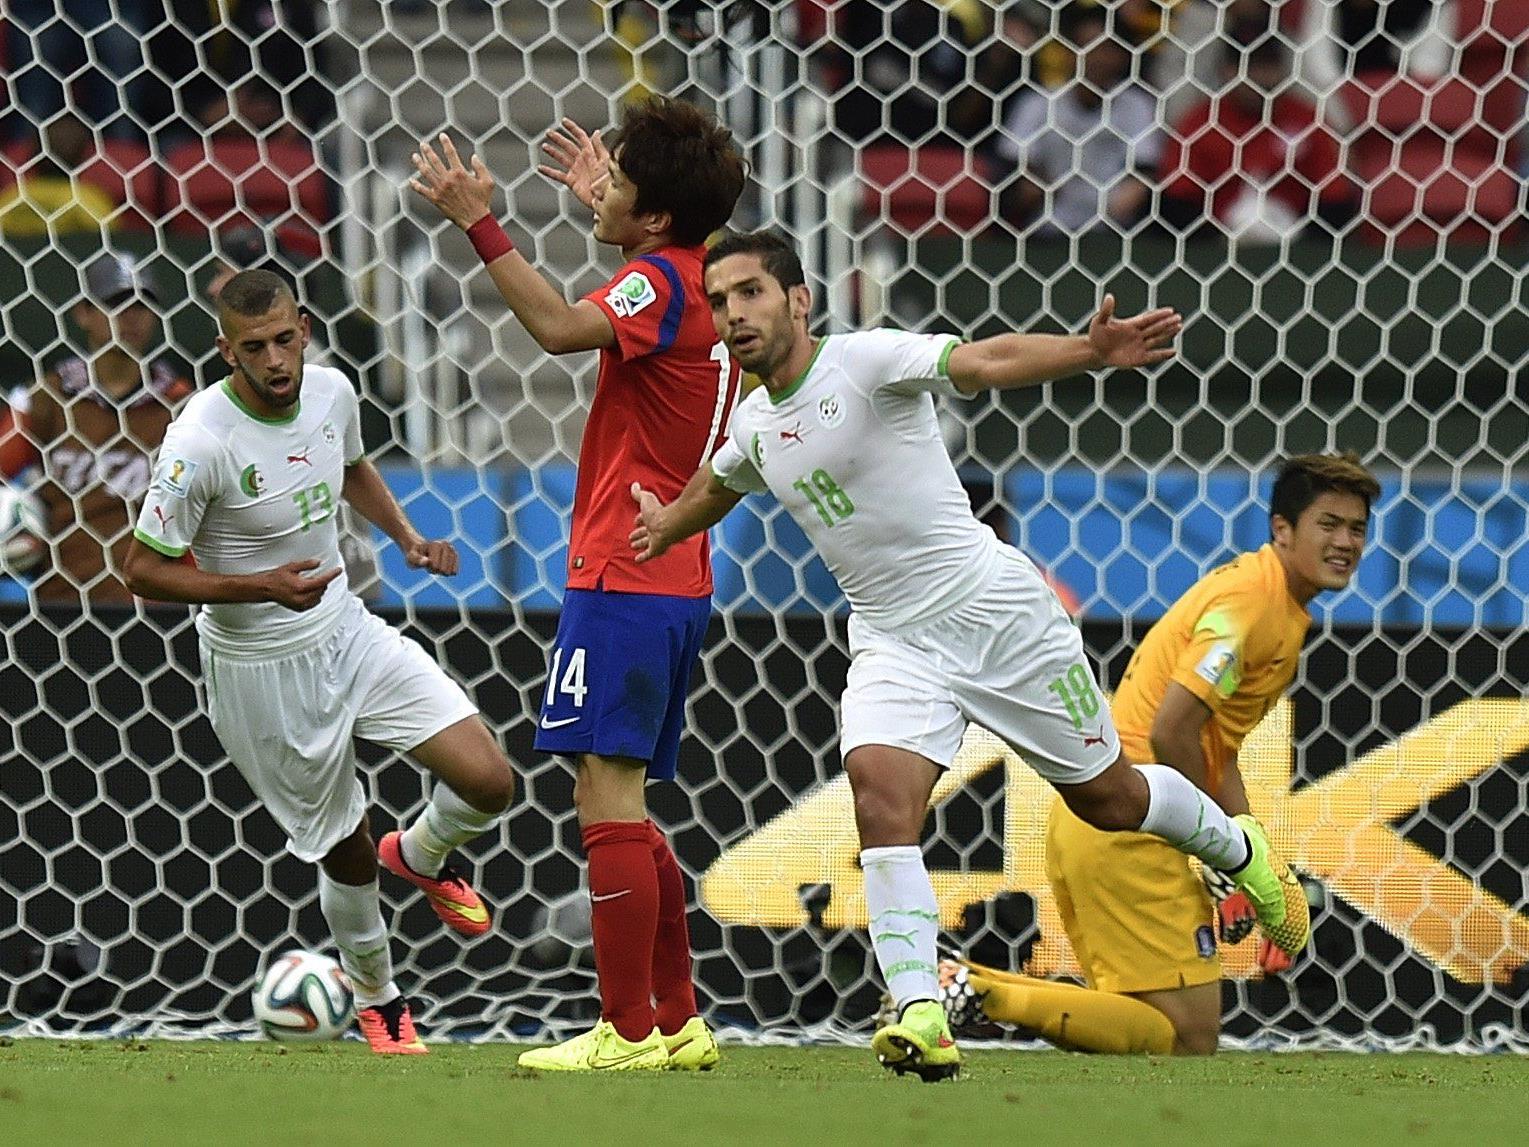 Die Algerier überzeugten vor allem in der ersten Halbzeit mit schnellem Angriffsfußball.